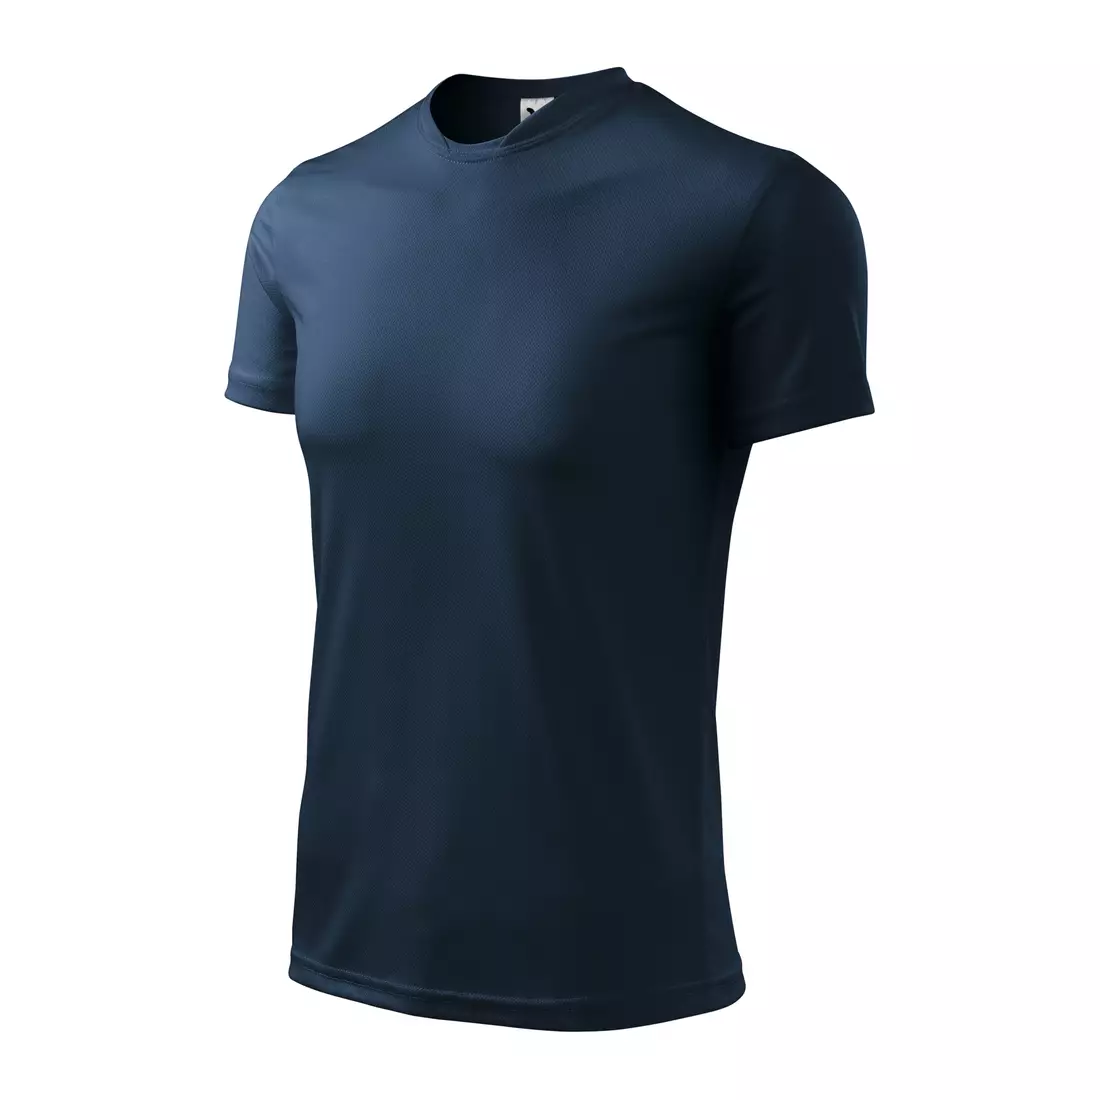 MALFINI FANTASY - pánské sportovní tričko z 100% polyesteru, tmavě modré 1240213-124